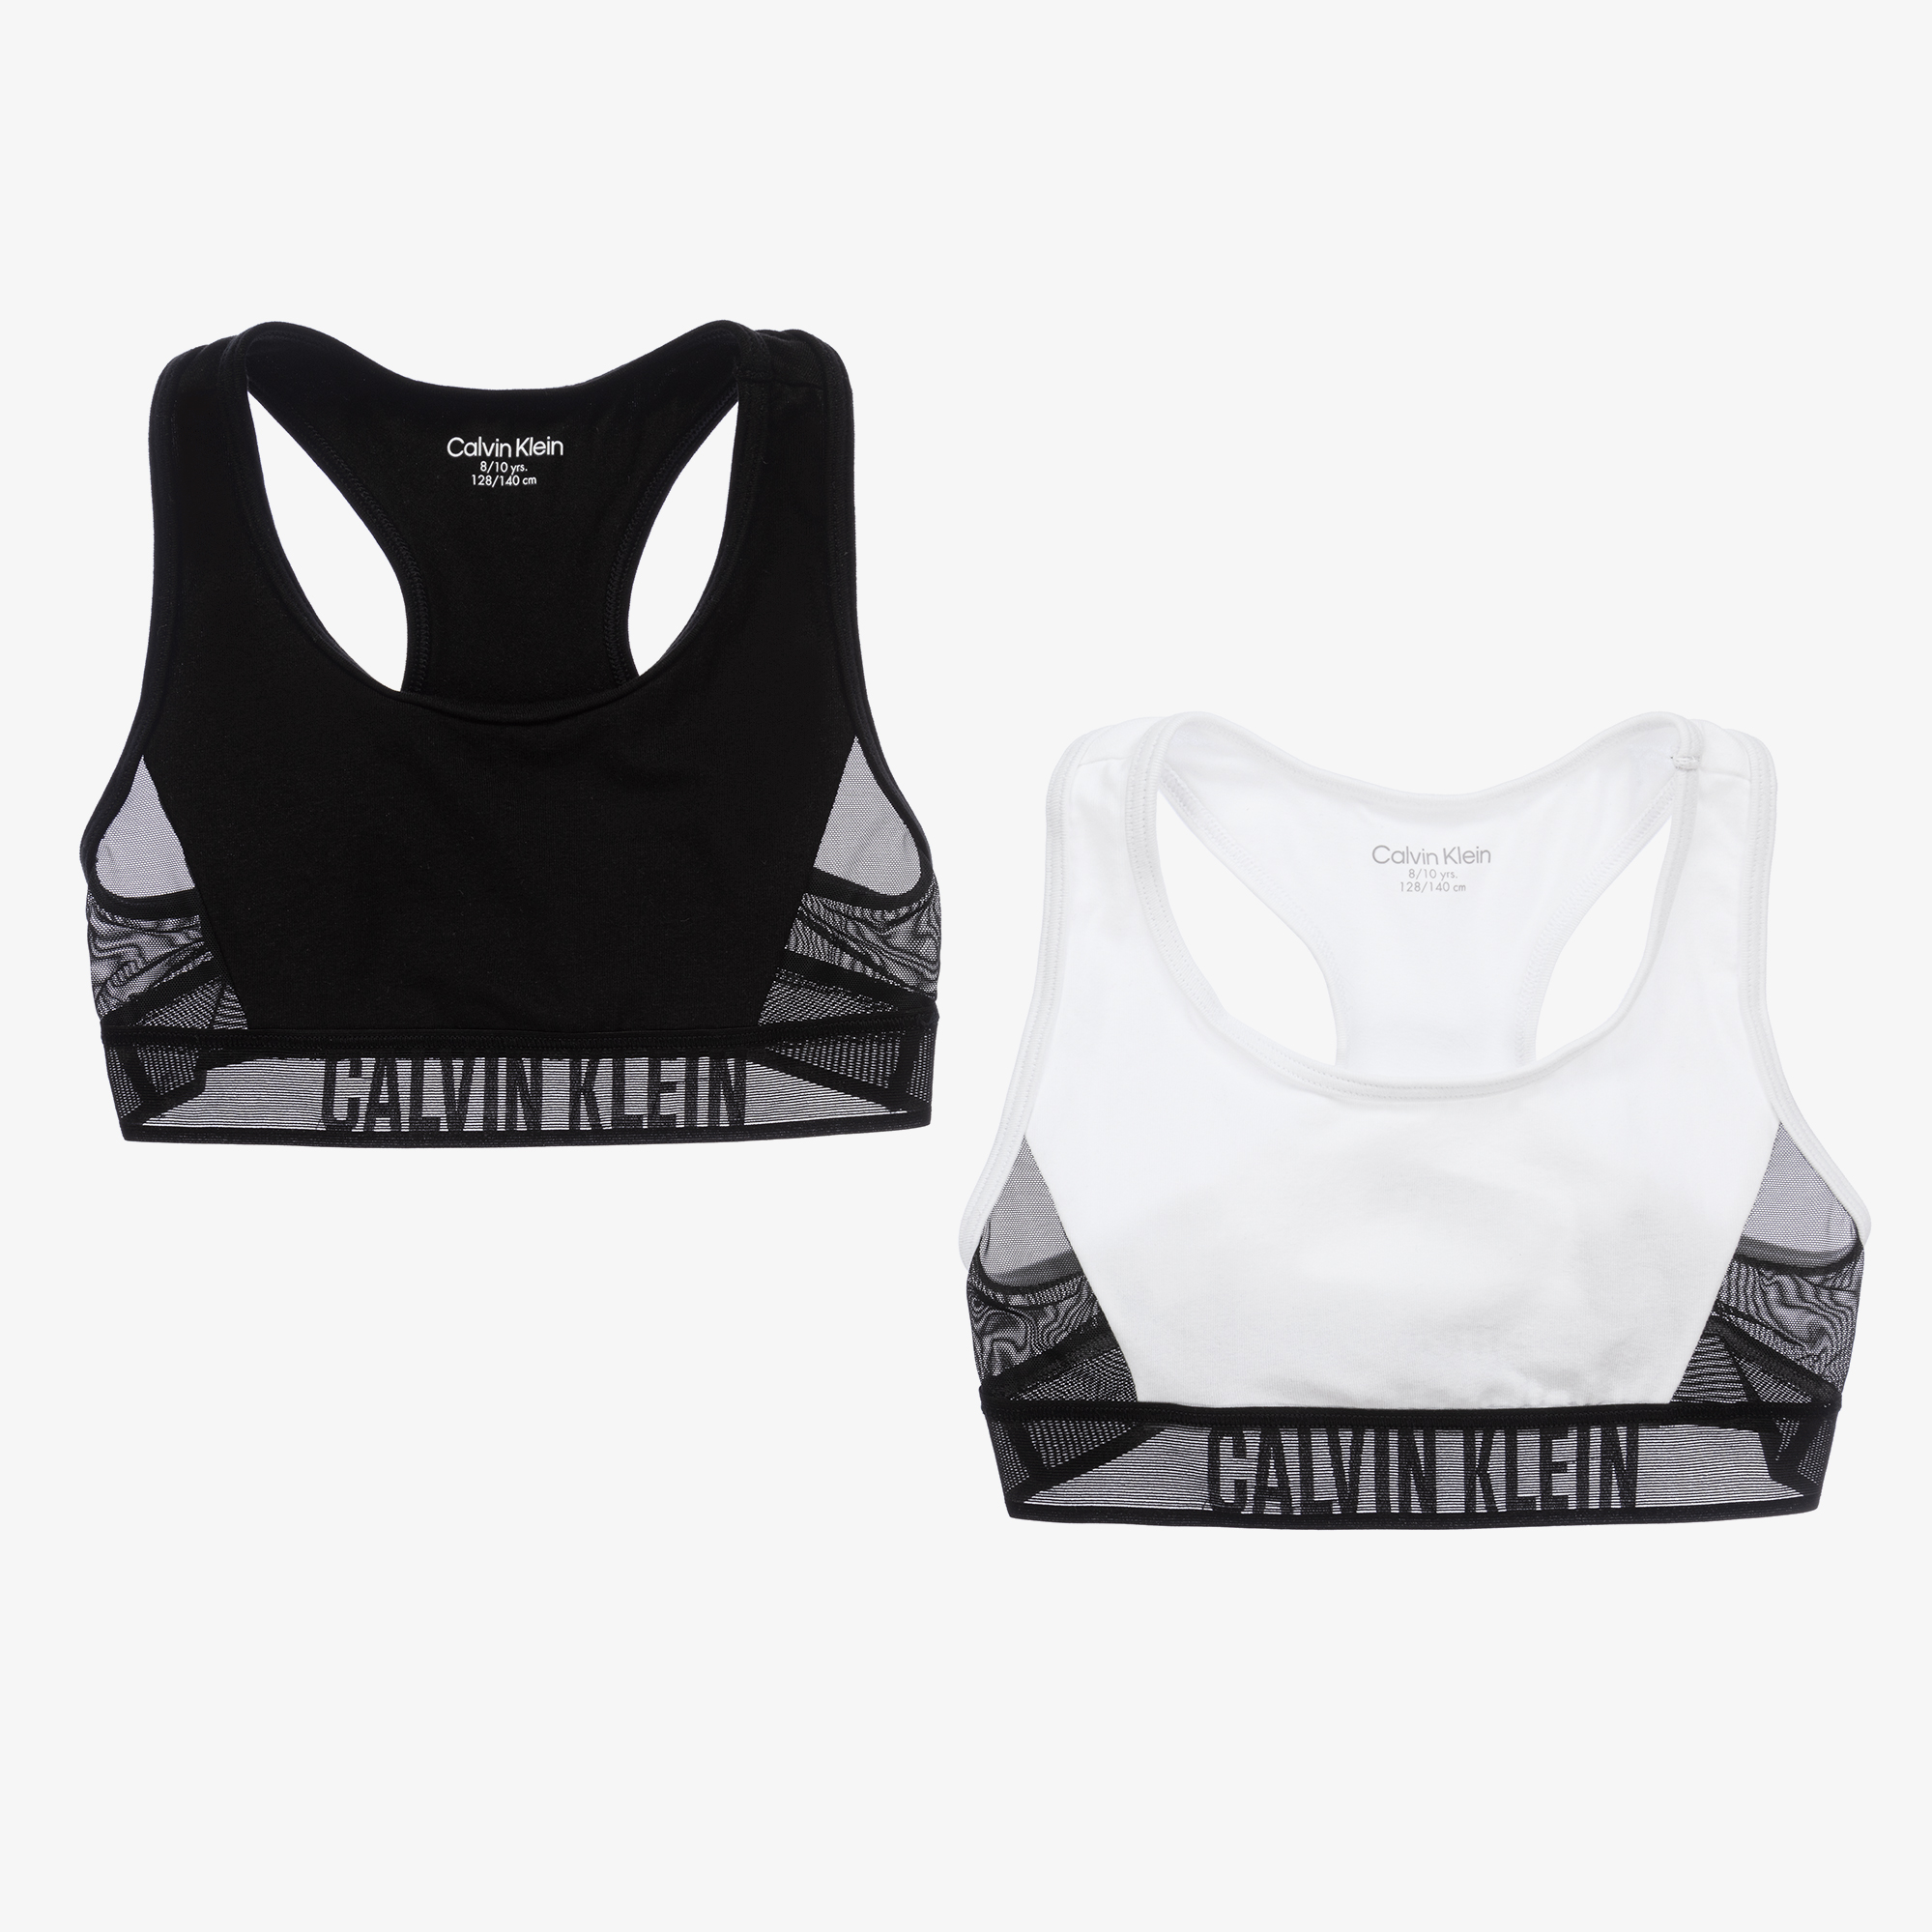 Calvin Klein - Girls Black & White Bralettes (2 Pack)